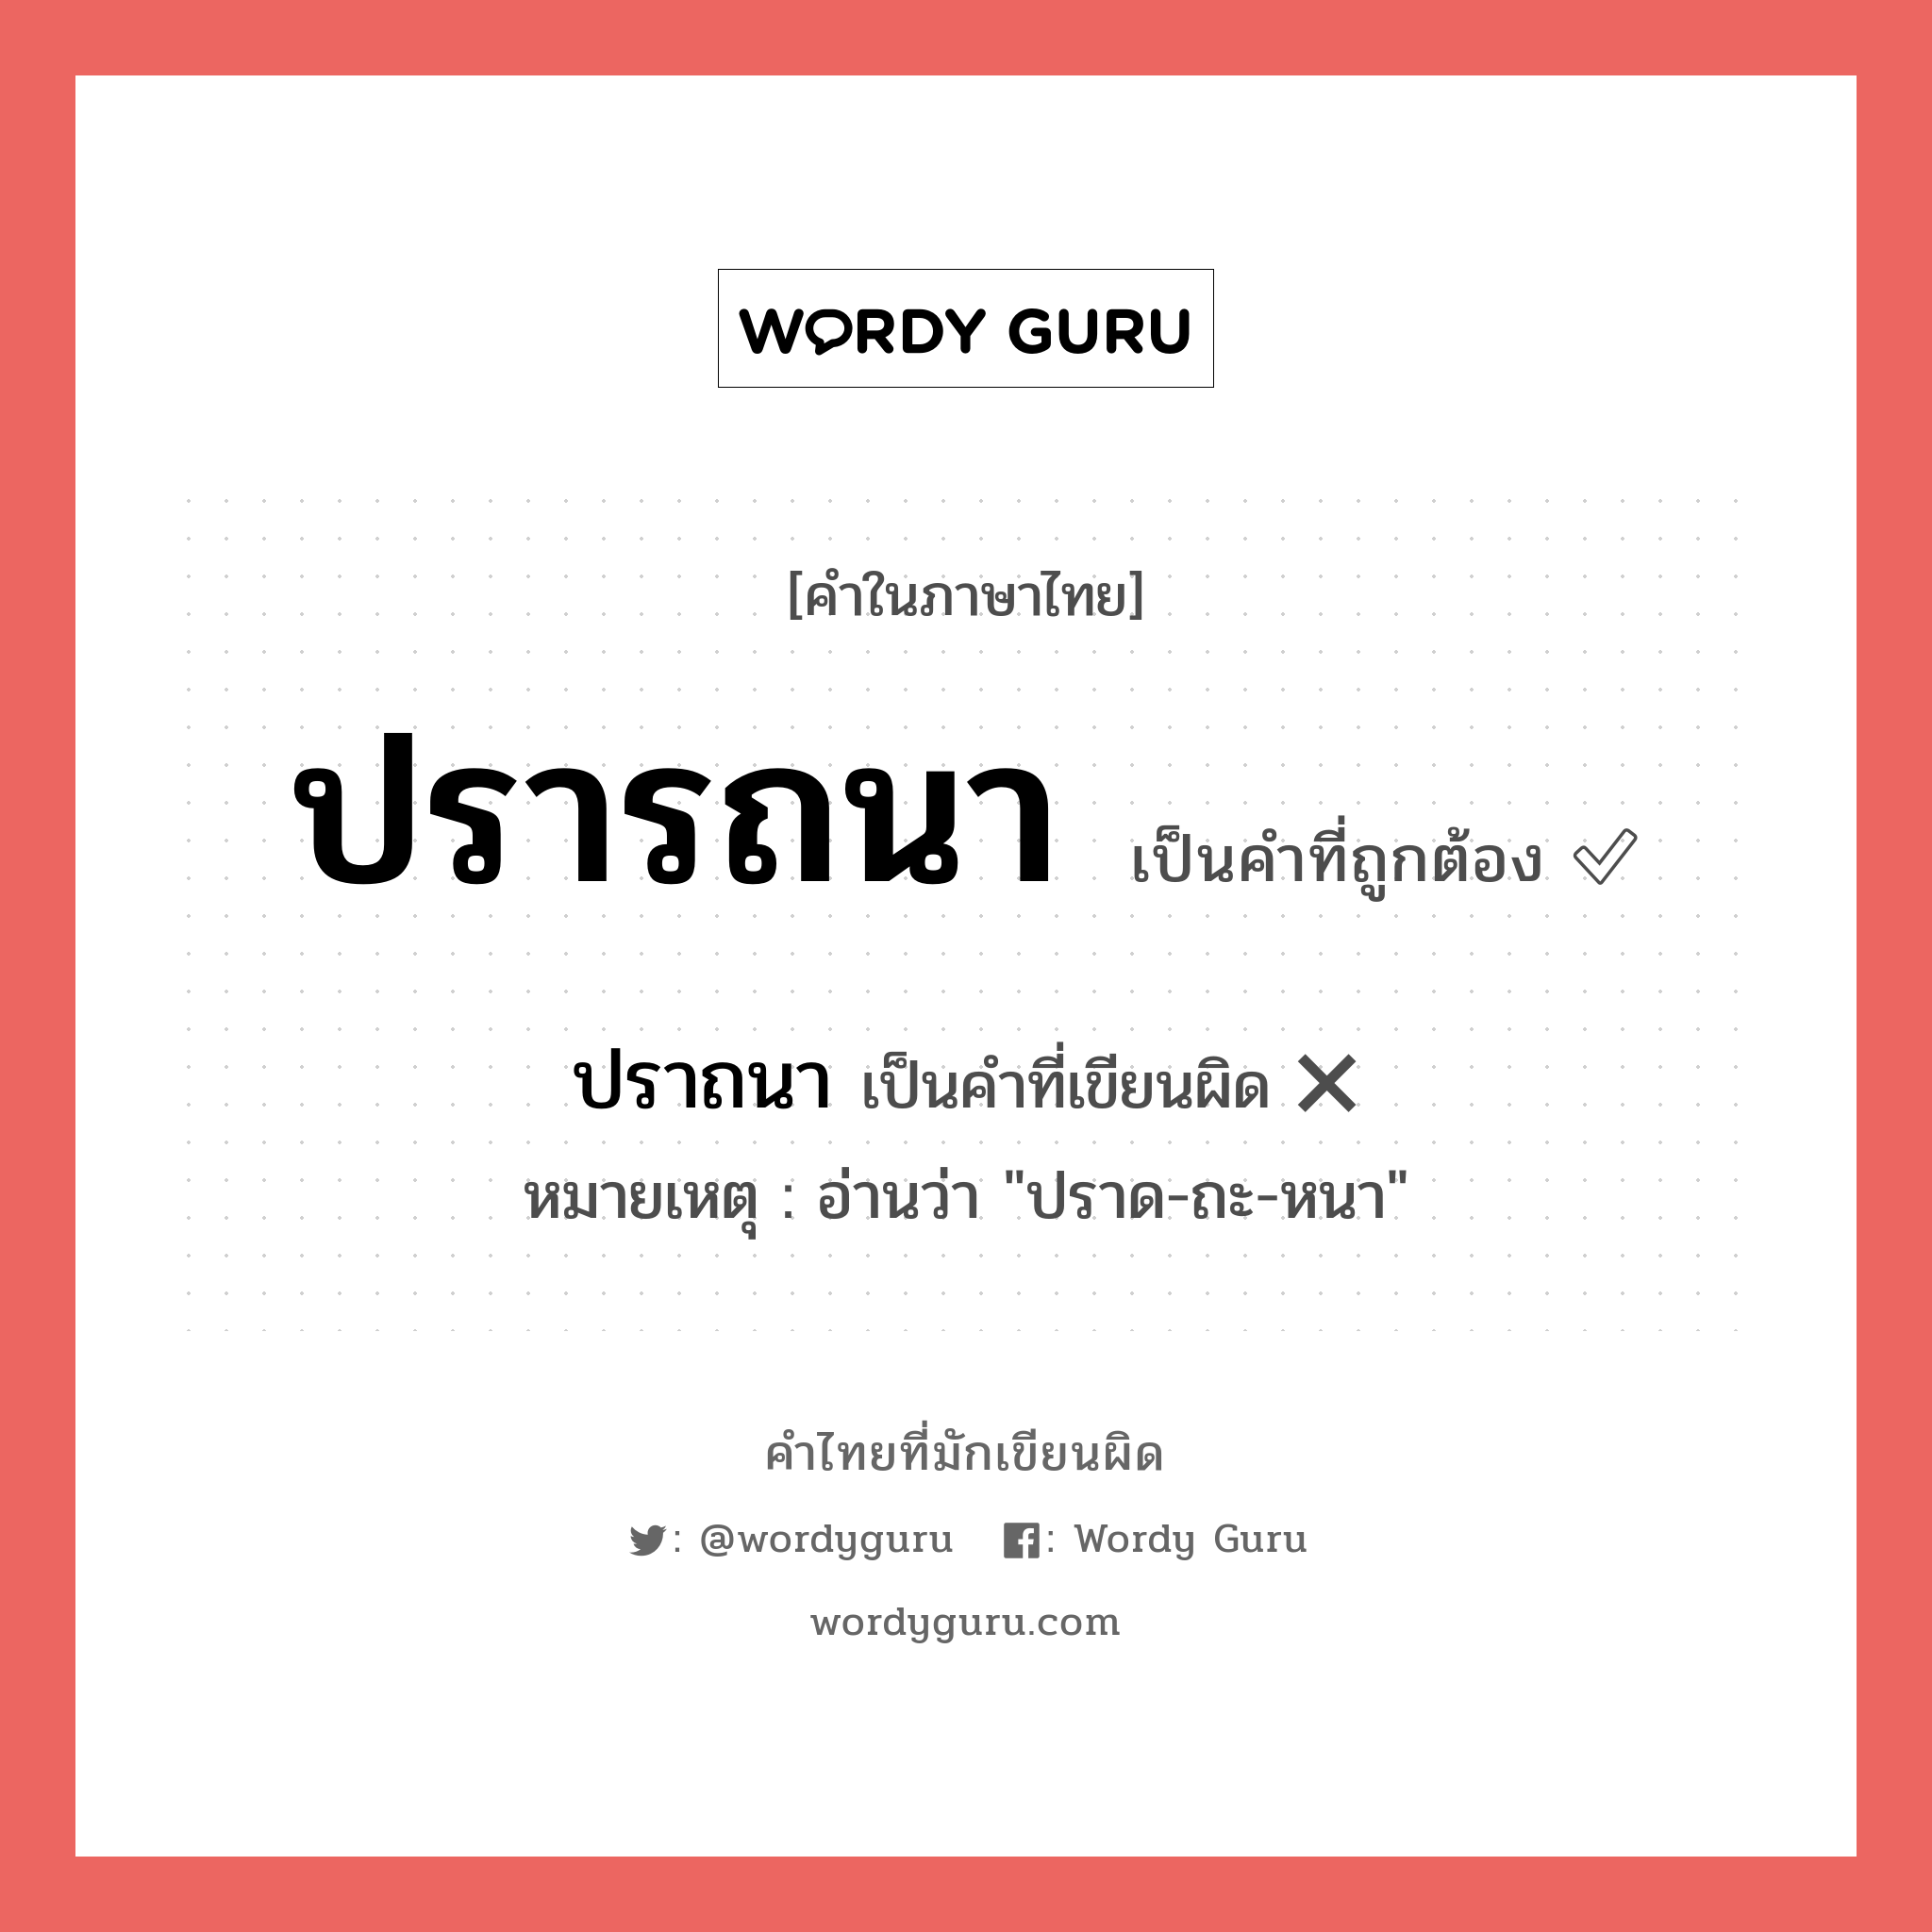 ปรารถนา หรือ ปราถนา เขียนยังไง? คำไหนเขียนถูก?, คำในภาษาไทยที่มักเขียนผิด ปรารถนา คำที่ผิด ❌ ปราถนา หมายเหตุ อ่านว่า "ปราด-ถะ-หนา"